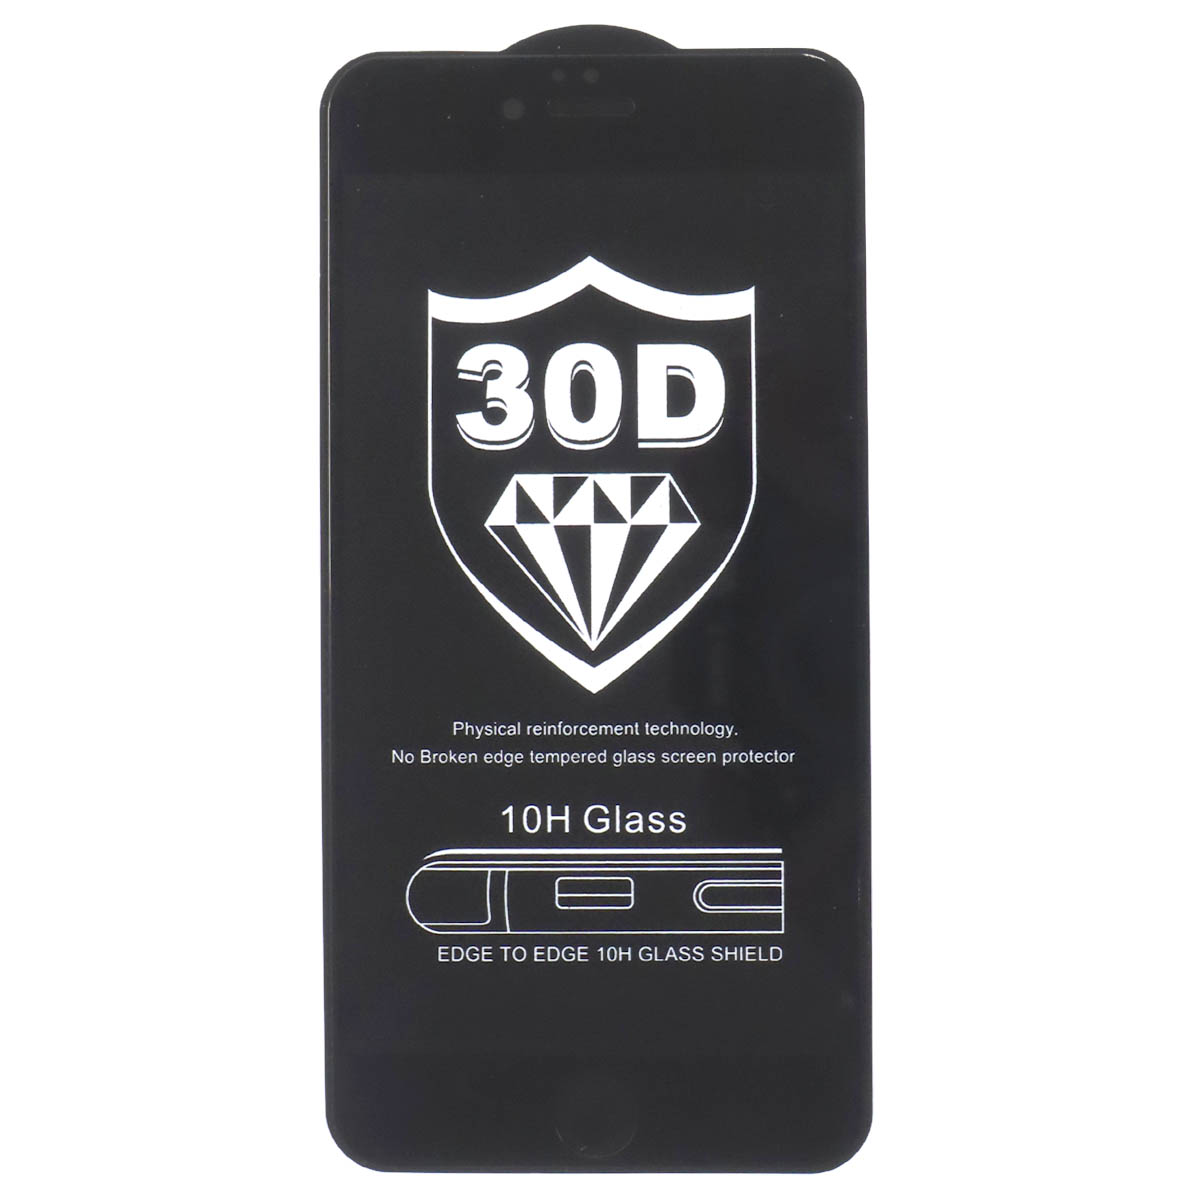 Защитное стекло 30D для APPLE iPhone 6 Plus, iPhone 6G Plus, iPhone 6S Plus, матовое, цвет черный